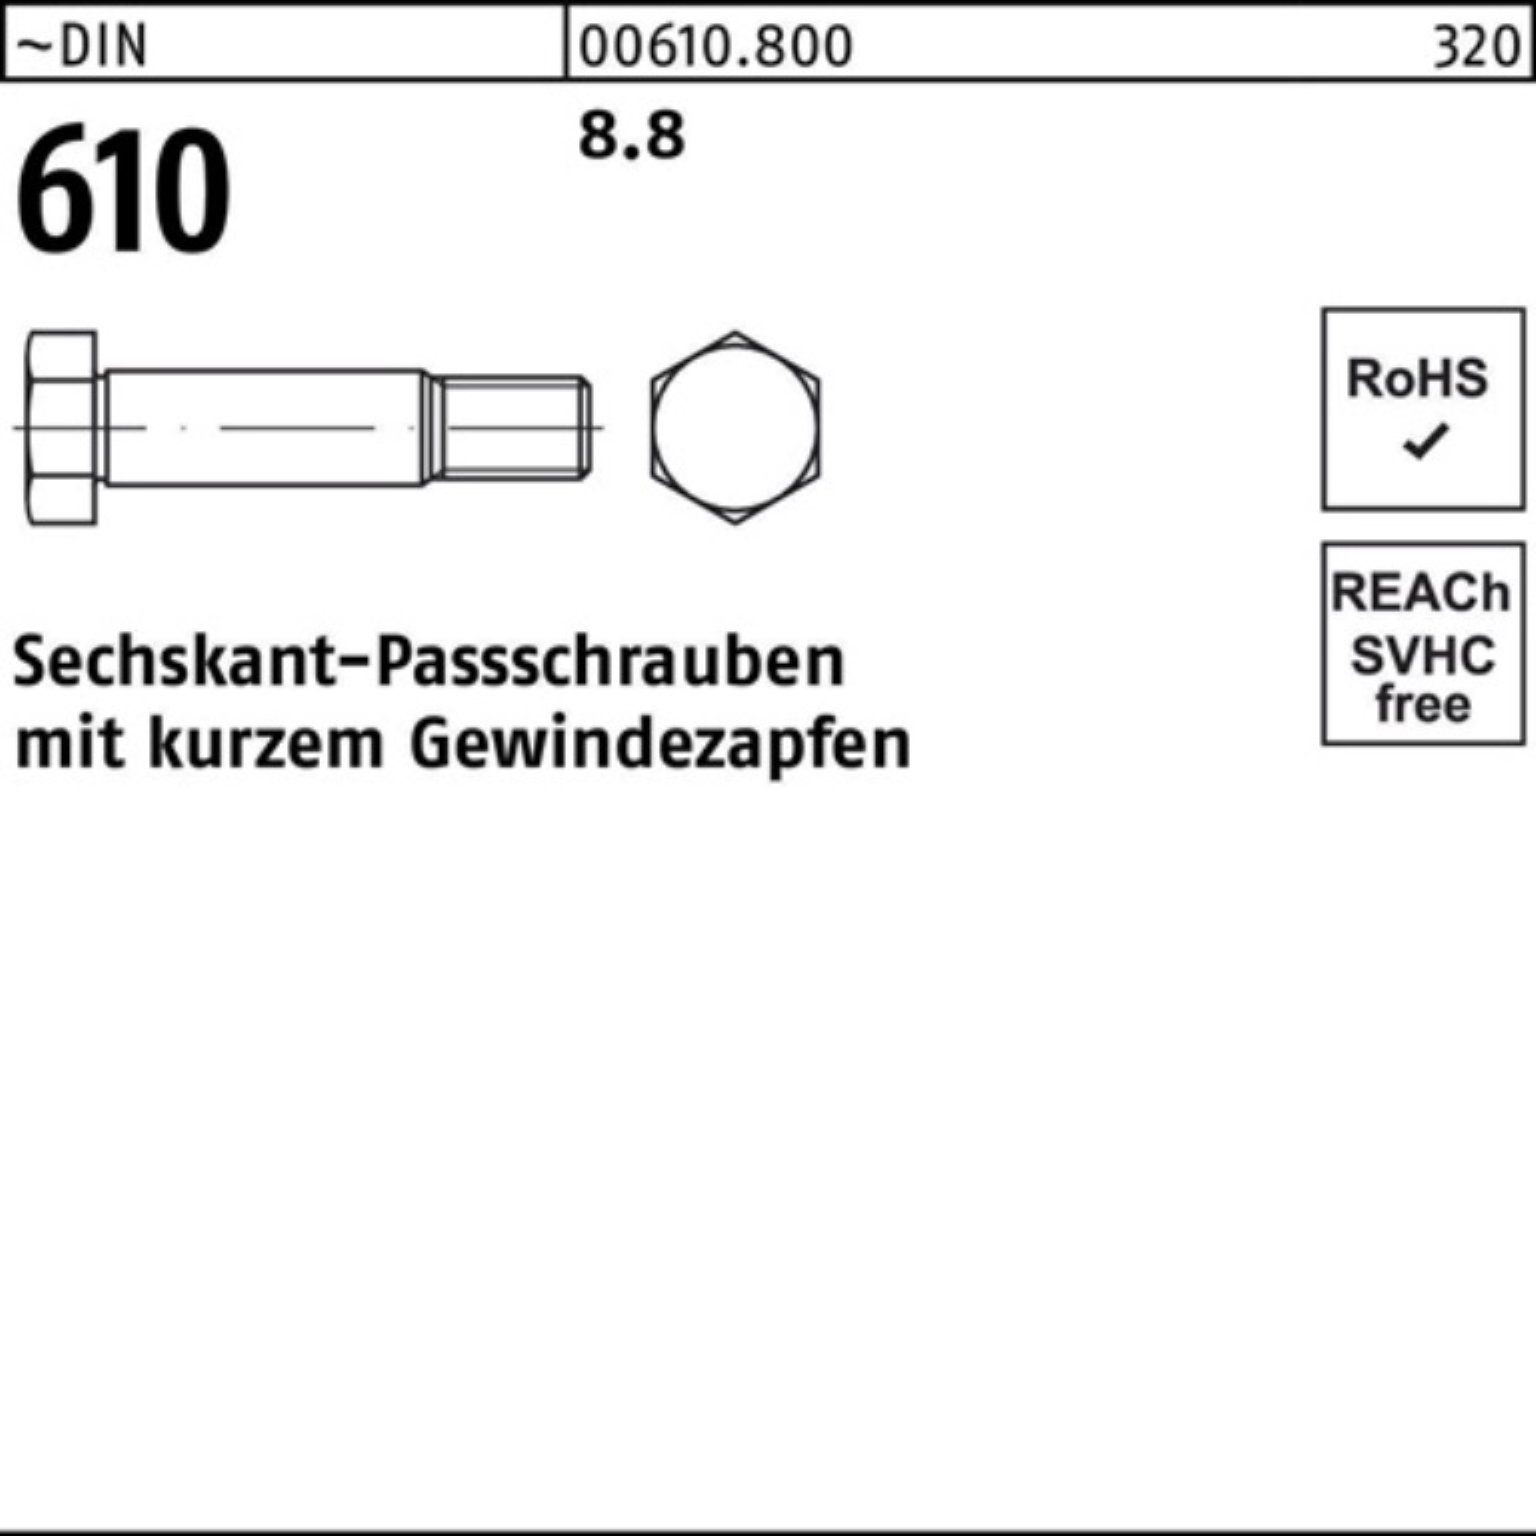 Reyher 130 M36x Gewindezapfen 100er kurzem DIN 610 Pack Sechskantpassschraube Schraube